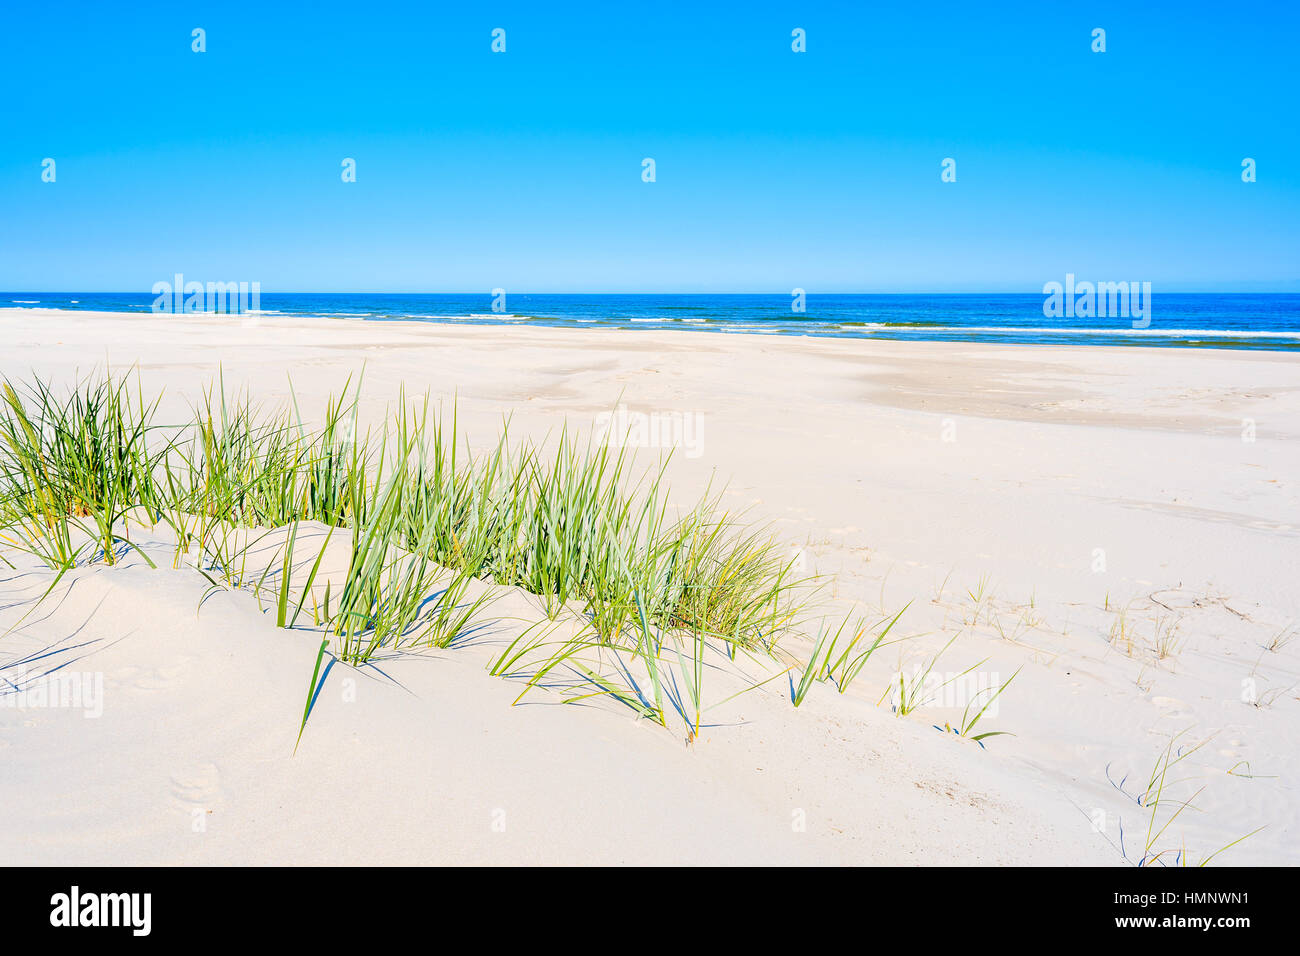 L'herbe verte sur la plage de dunes de sable sur la mer Baltique, Lubiatowo, Pologne Banque D'Images